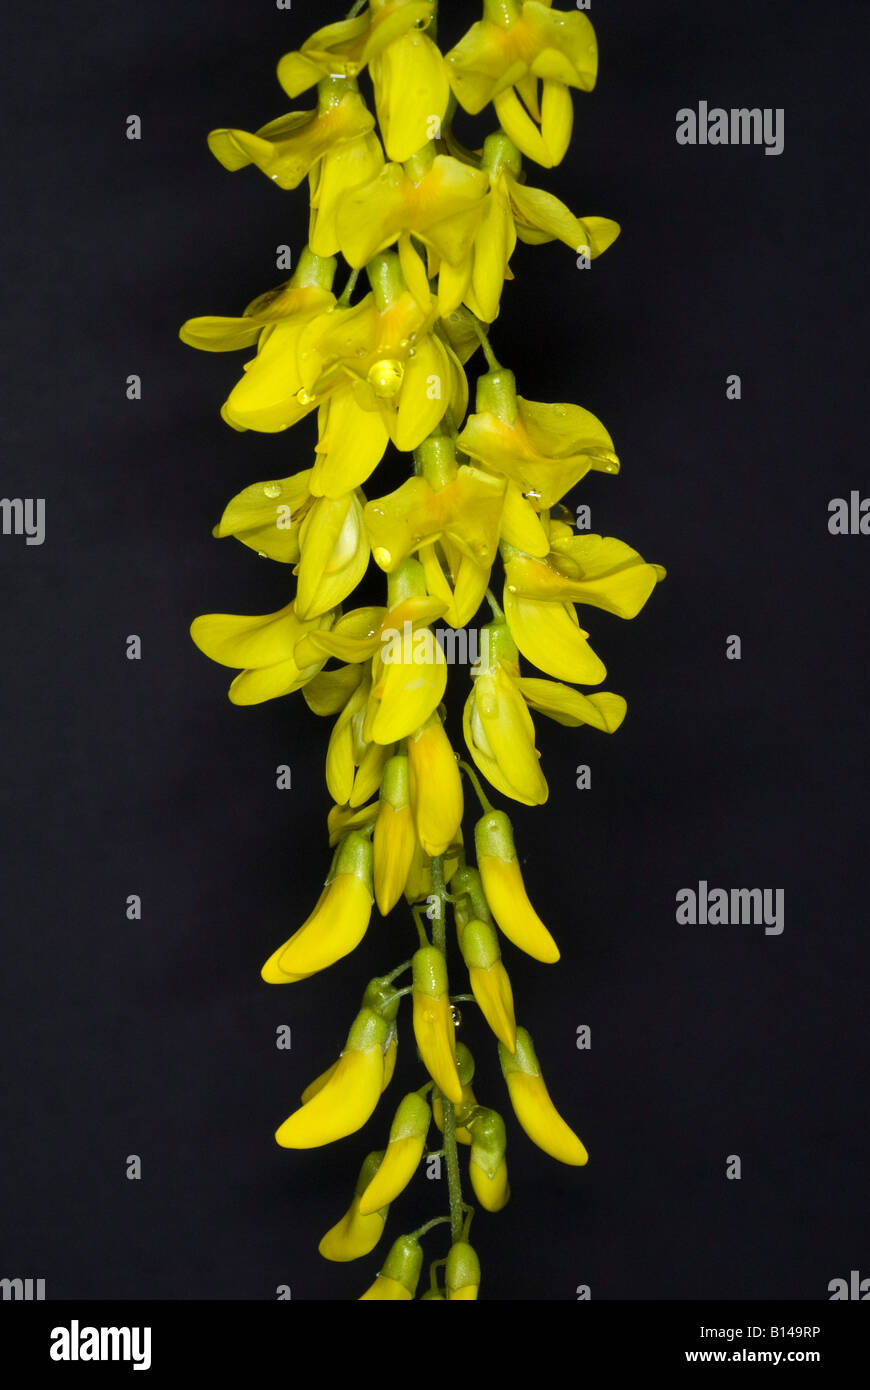 Catena di fiori immagini e fotografie stock ad alta risoluzione - Alamy